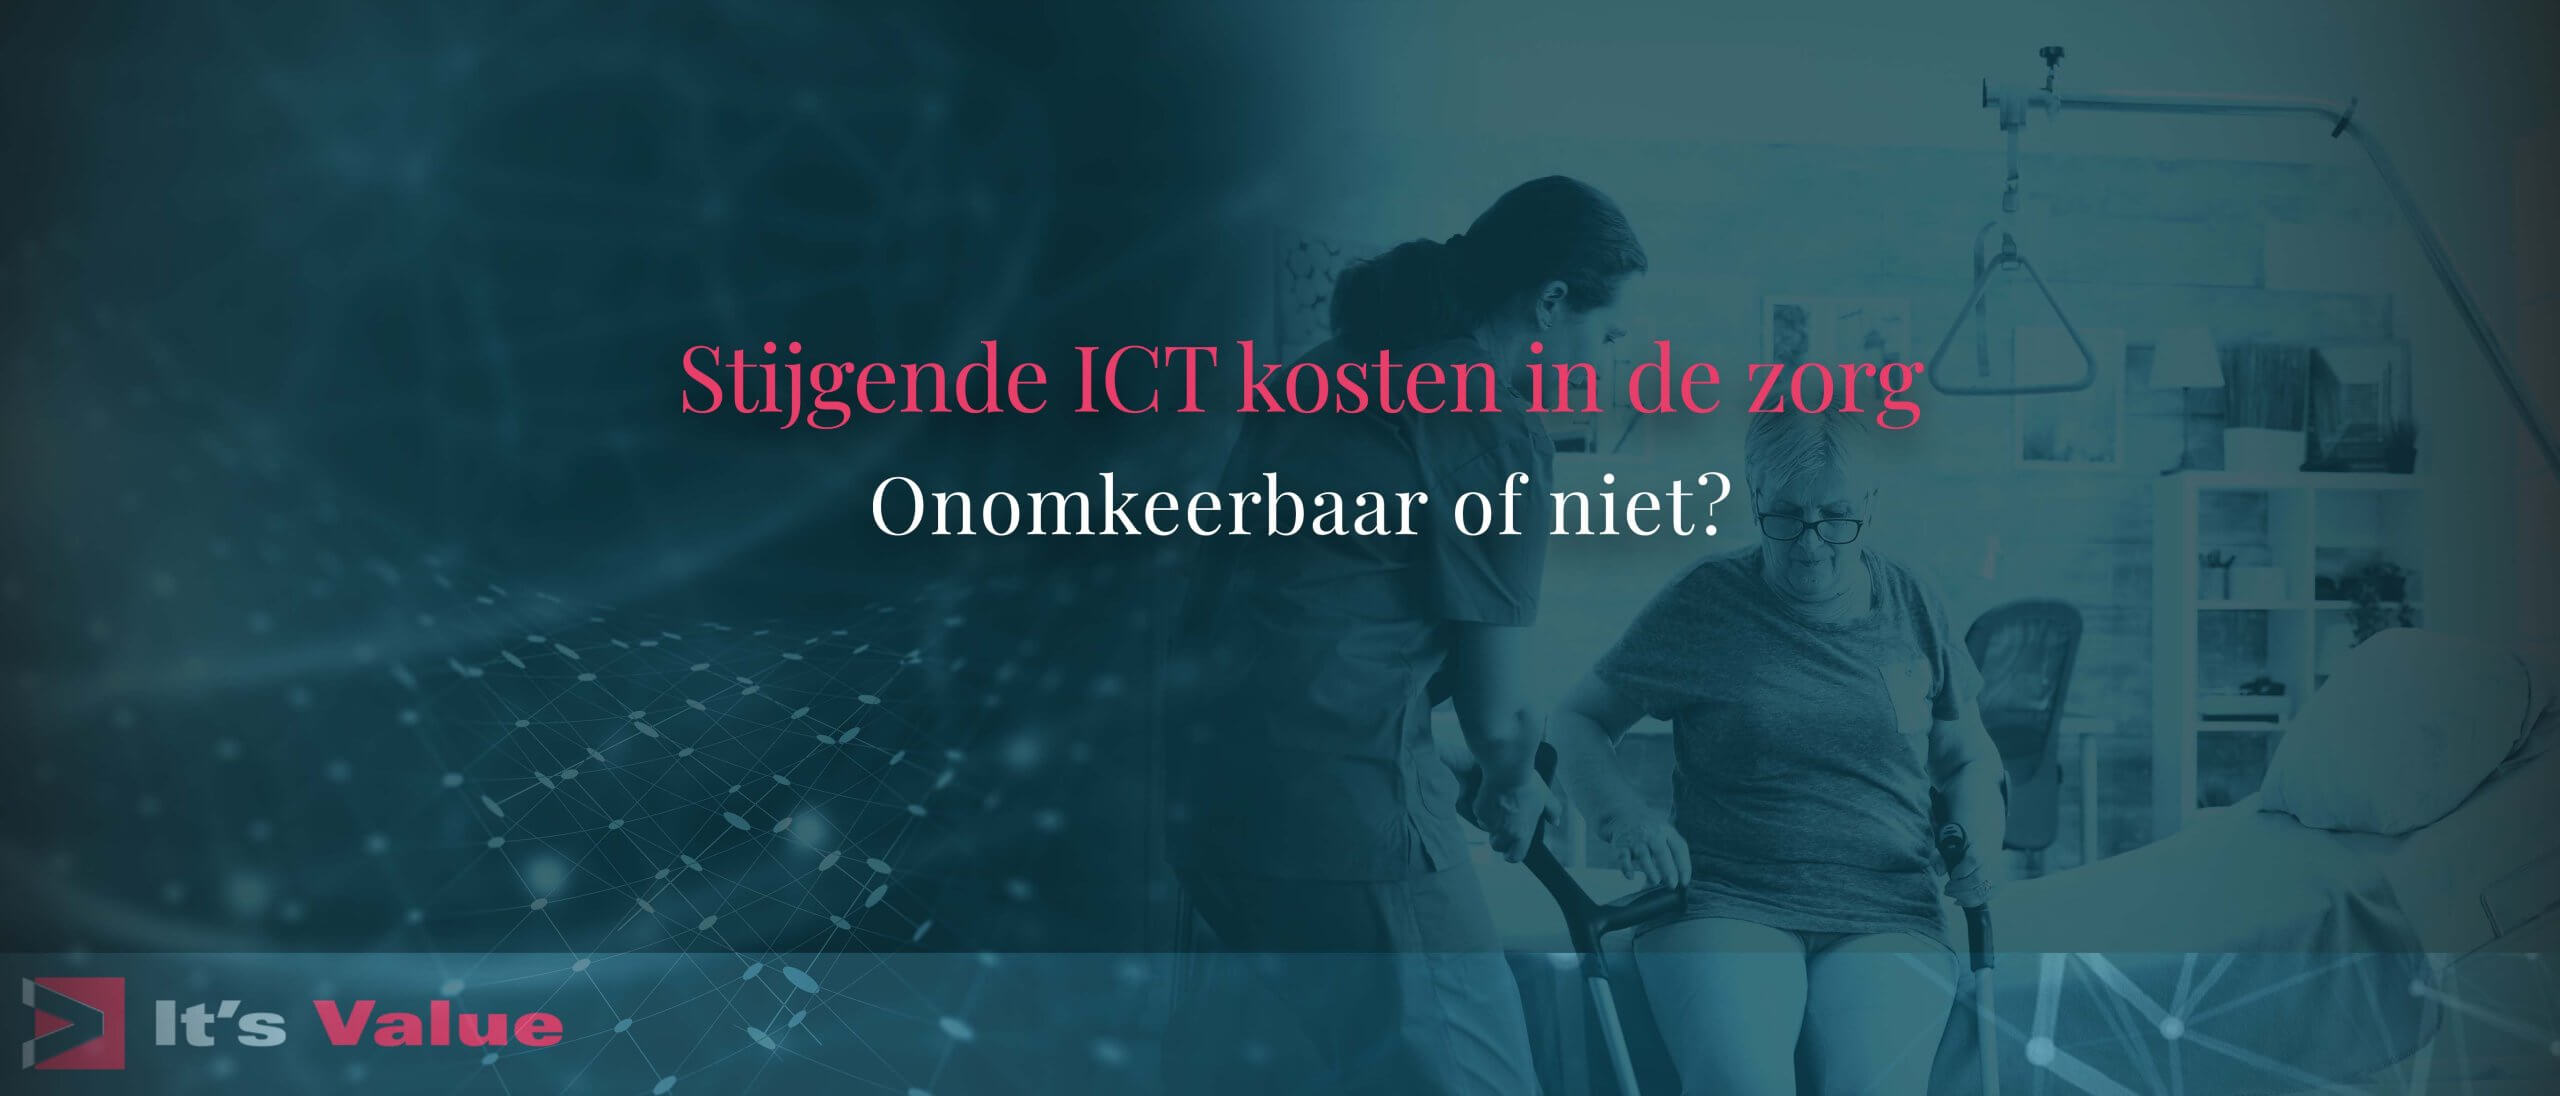 Stijgende ICT kosten in de zorg – Onomkeerbaar of niet?